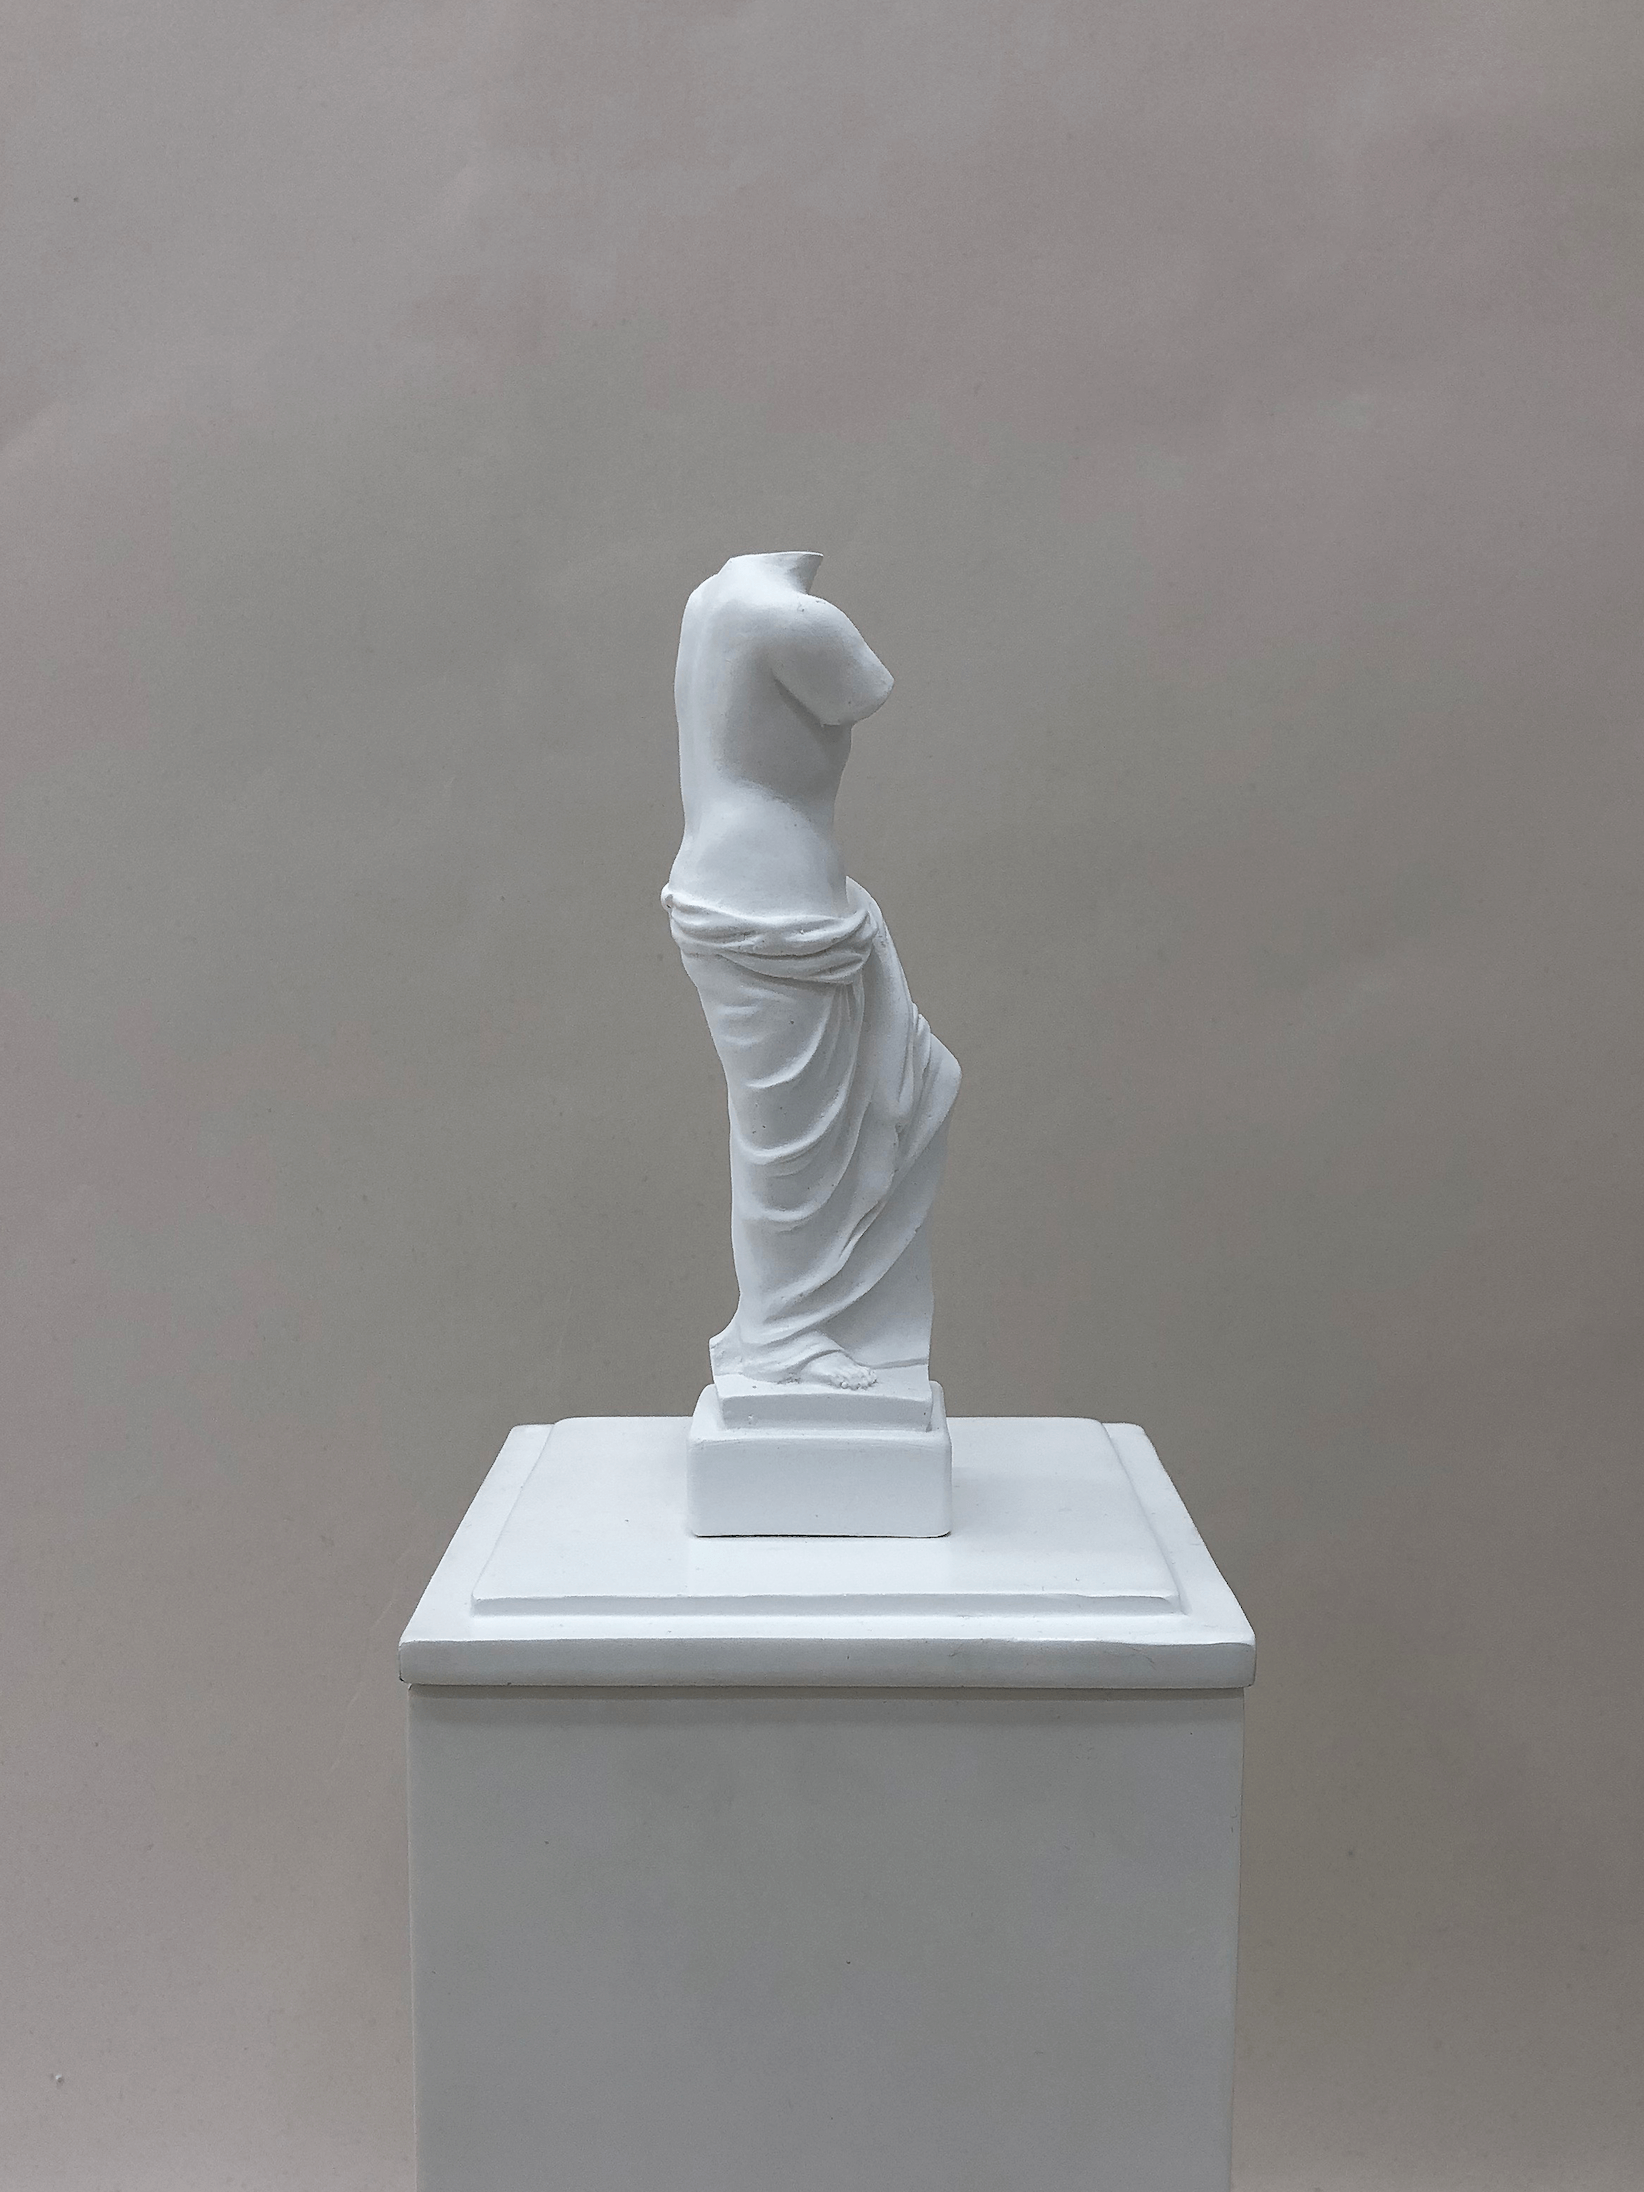 1. Venus Sculpture